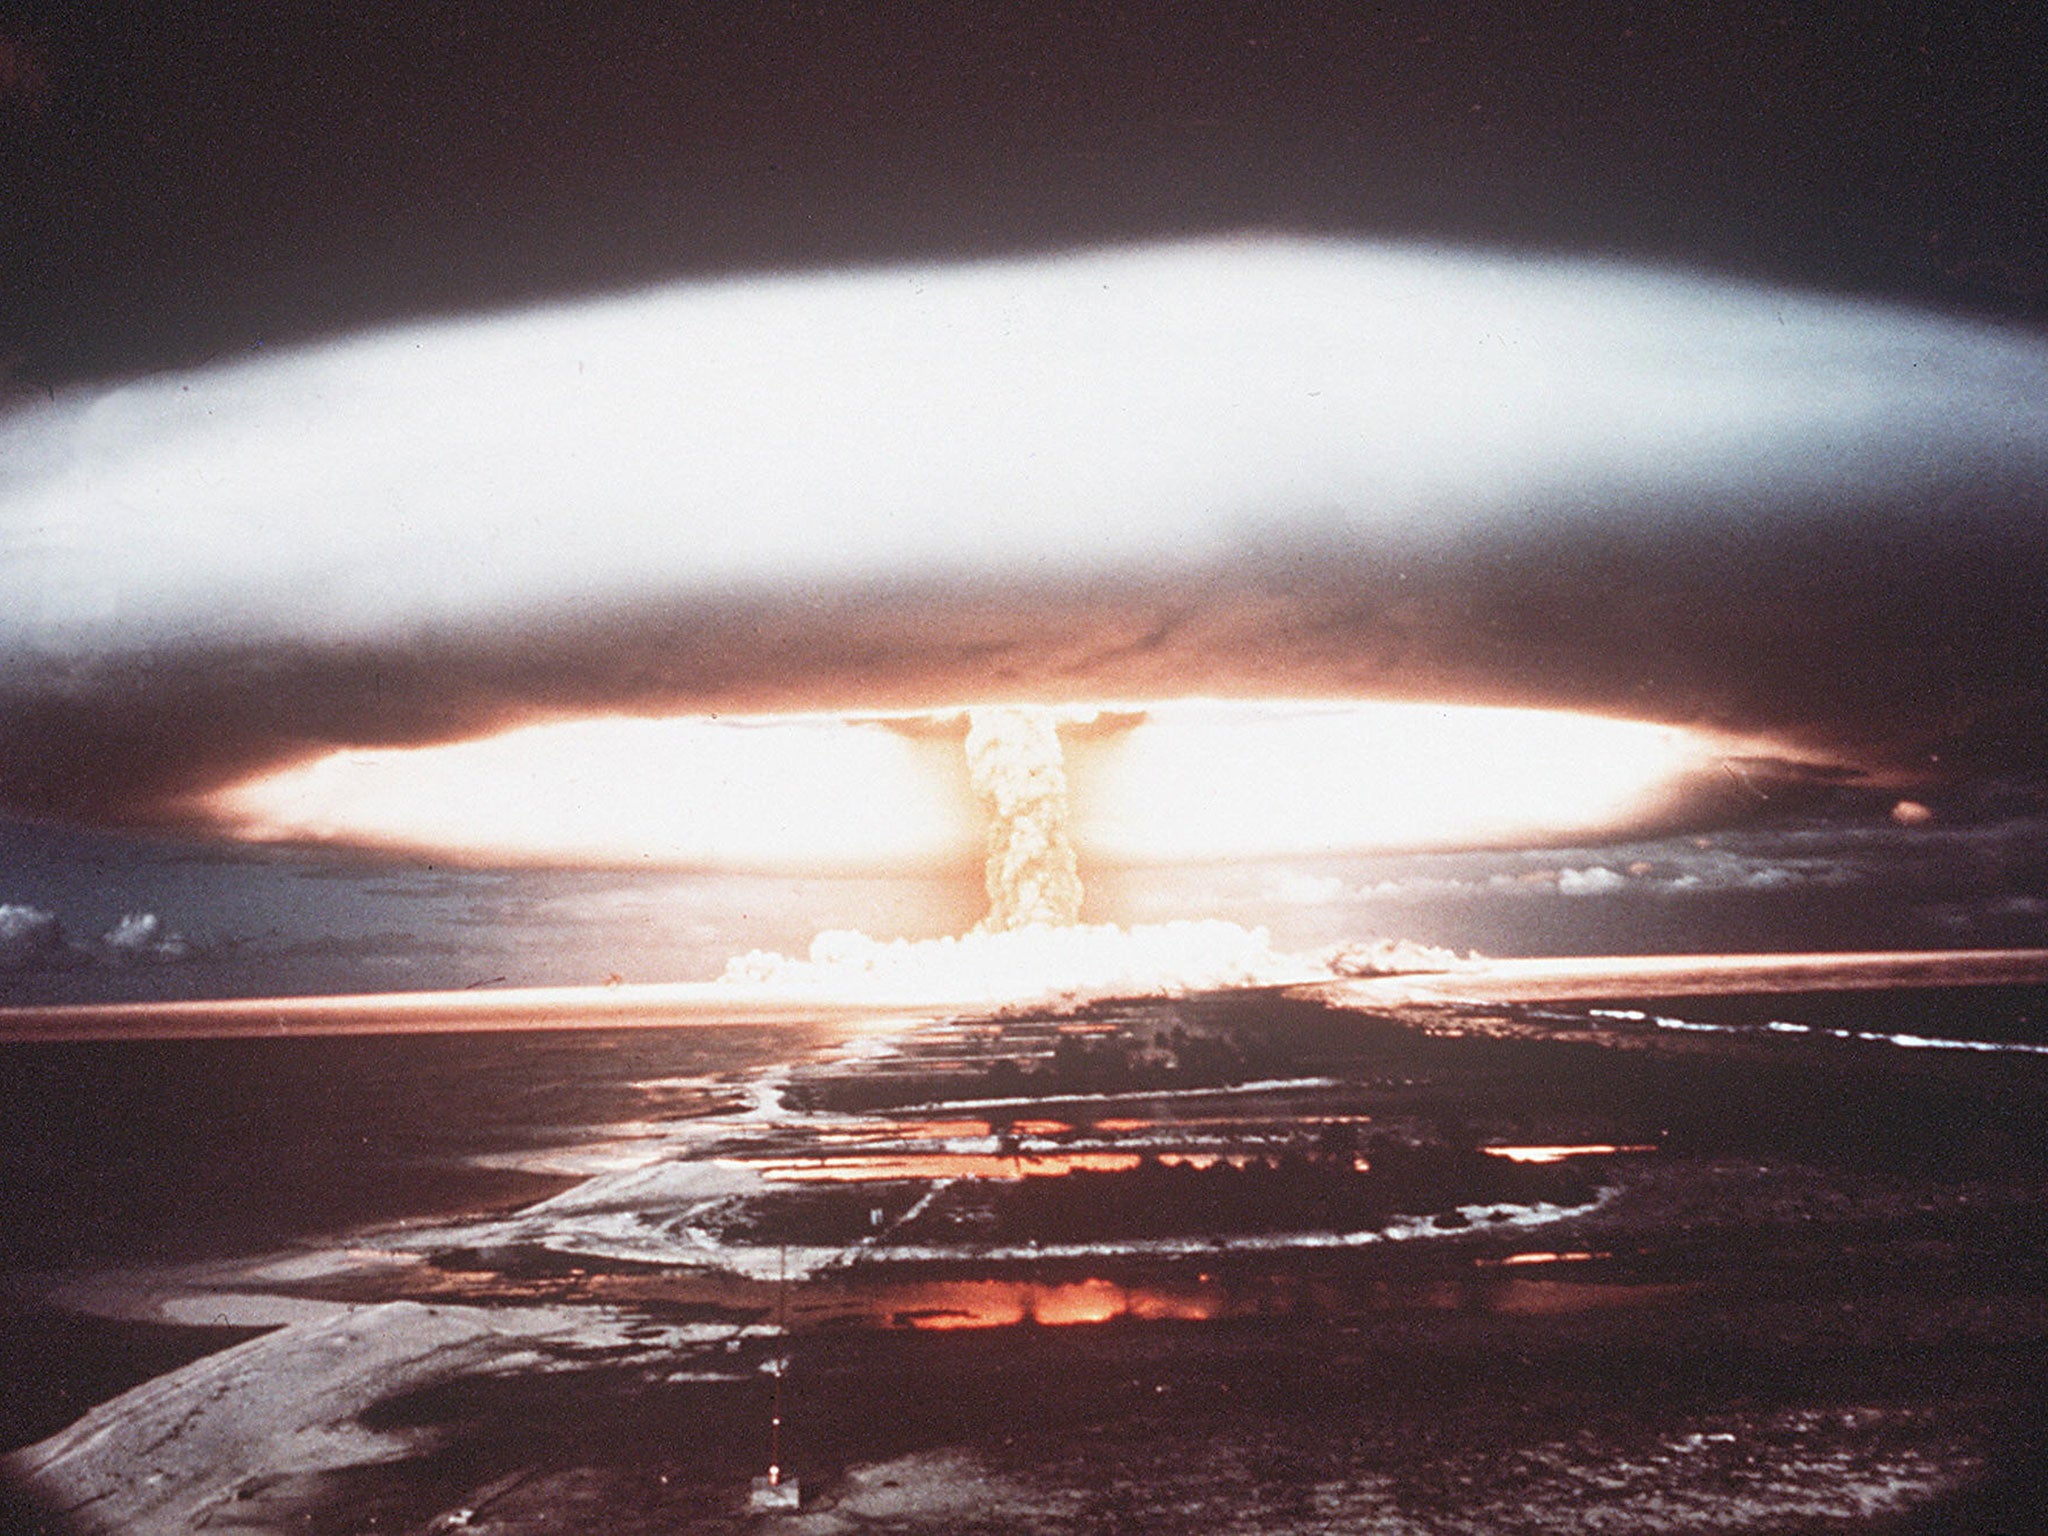 Атомная бомба в америке. ОМП ядерное оружие. Эпицентр взрыва «царь-бомбы» ан602.. 29 Января день мобилизации против угрозы ядерной войны. Атолл Муруроа ядерные испытания.